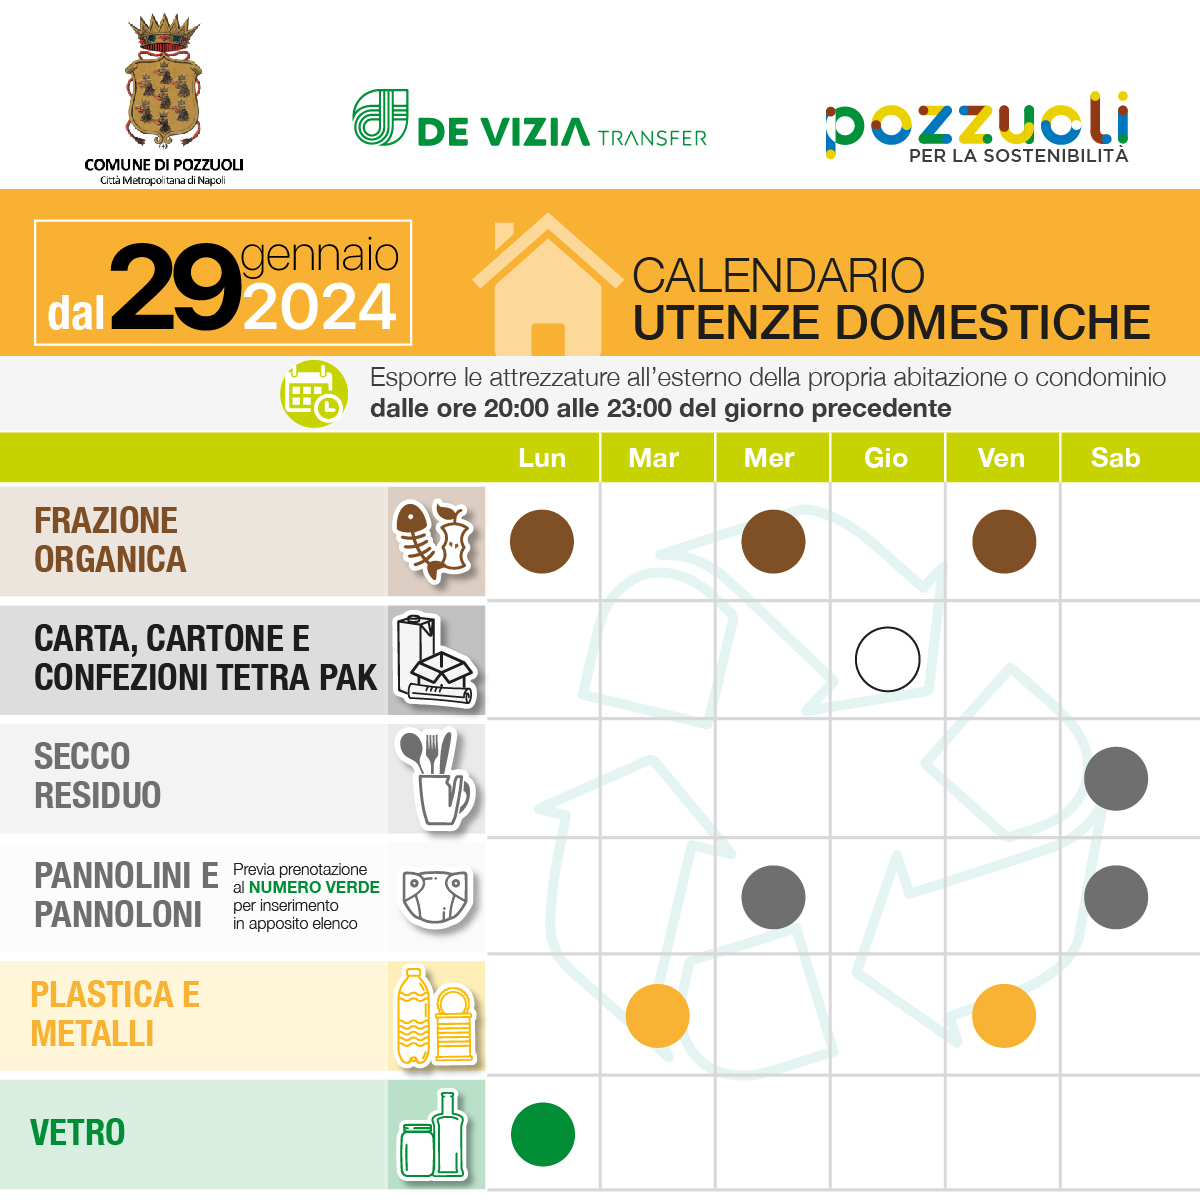 Raccolta differenziata a Pozzuoli: dal 29 gennaio scatta il nuovo calendario